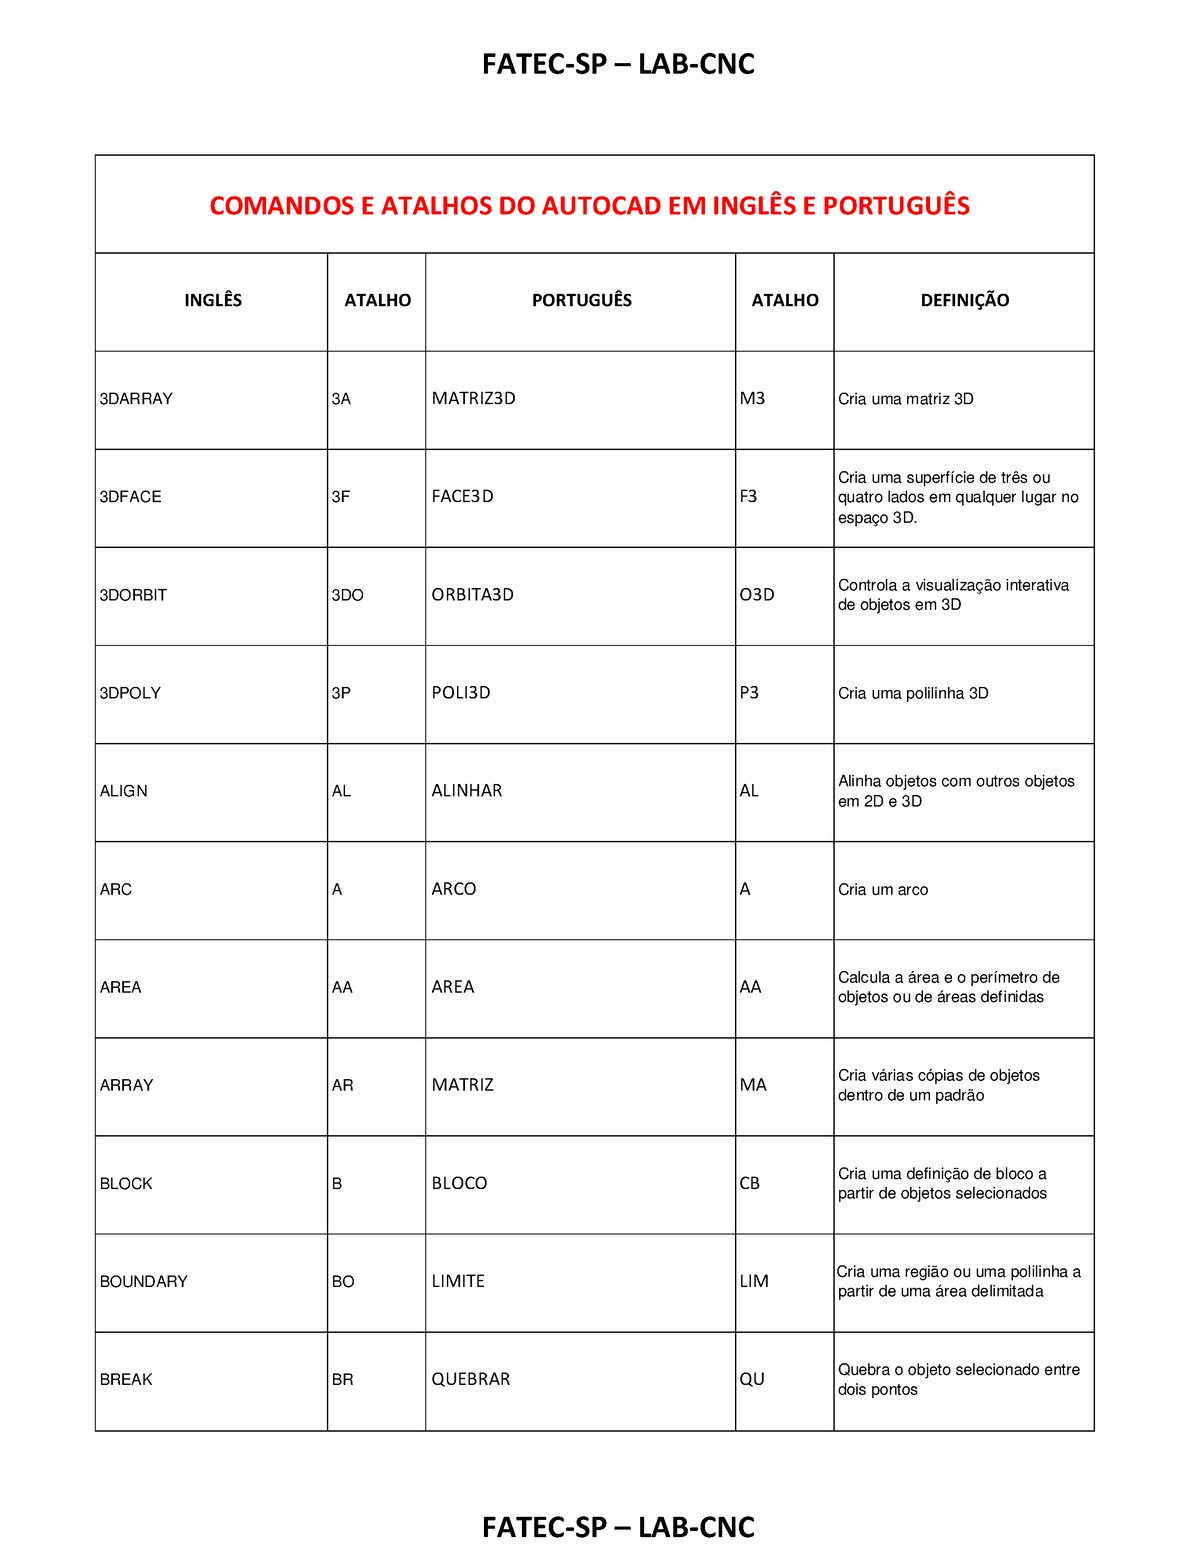 Comandos e atalhos do autocad em inglês e português